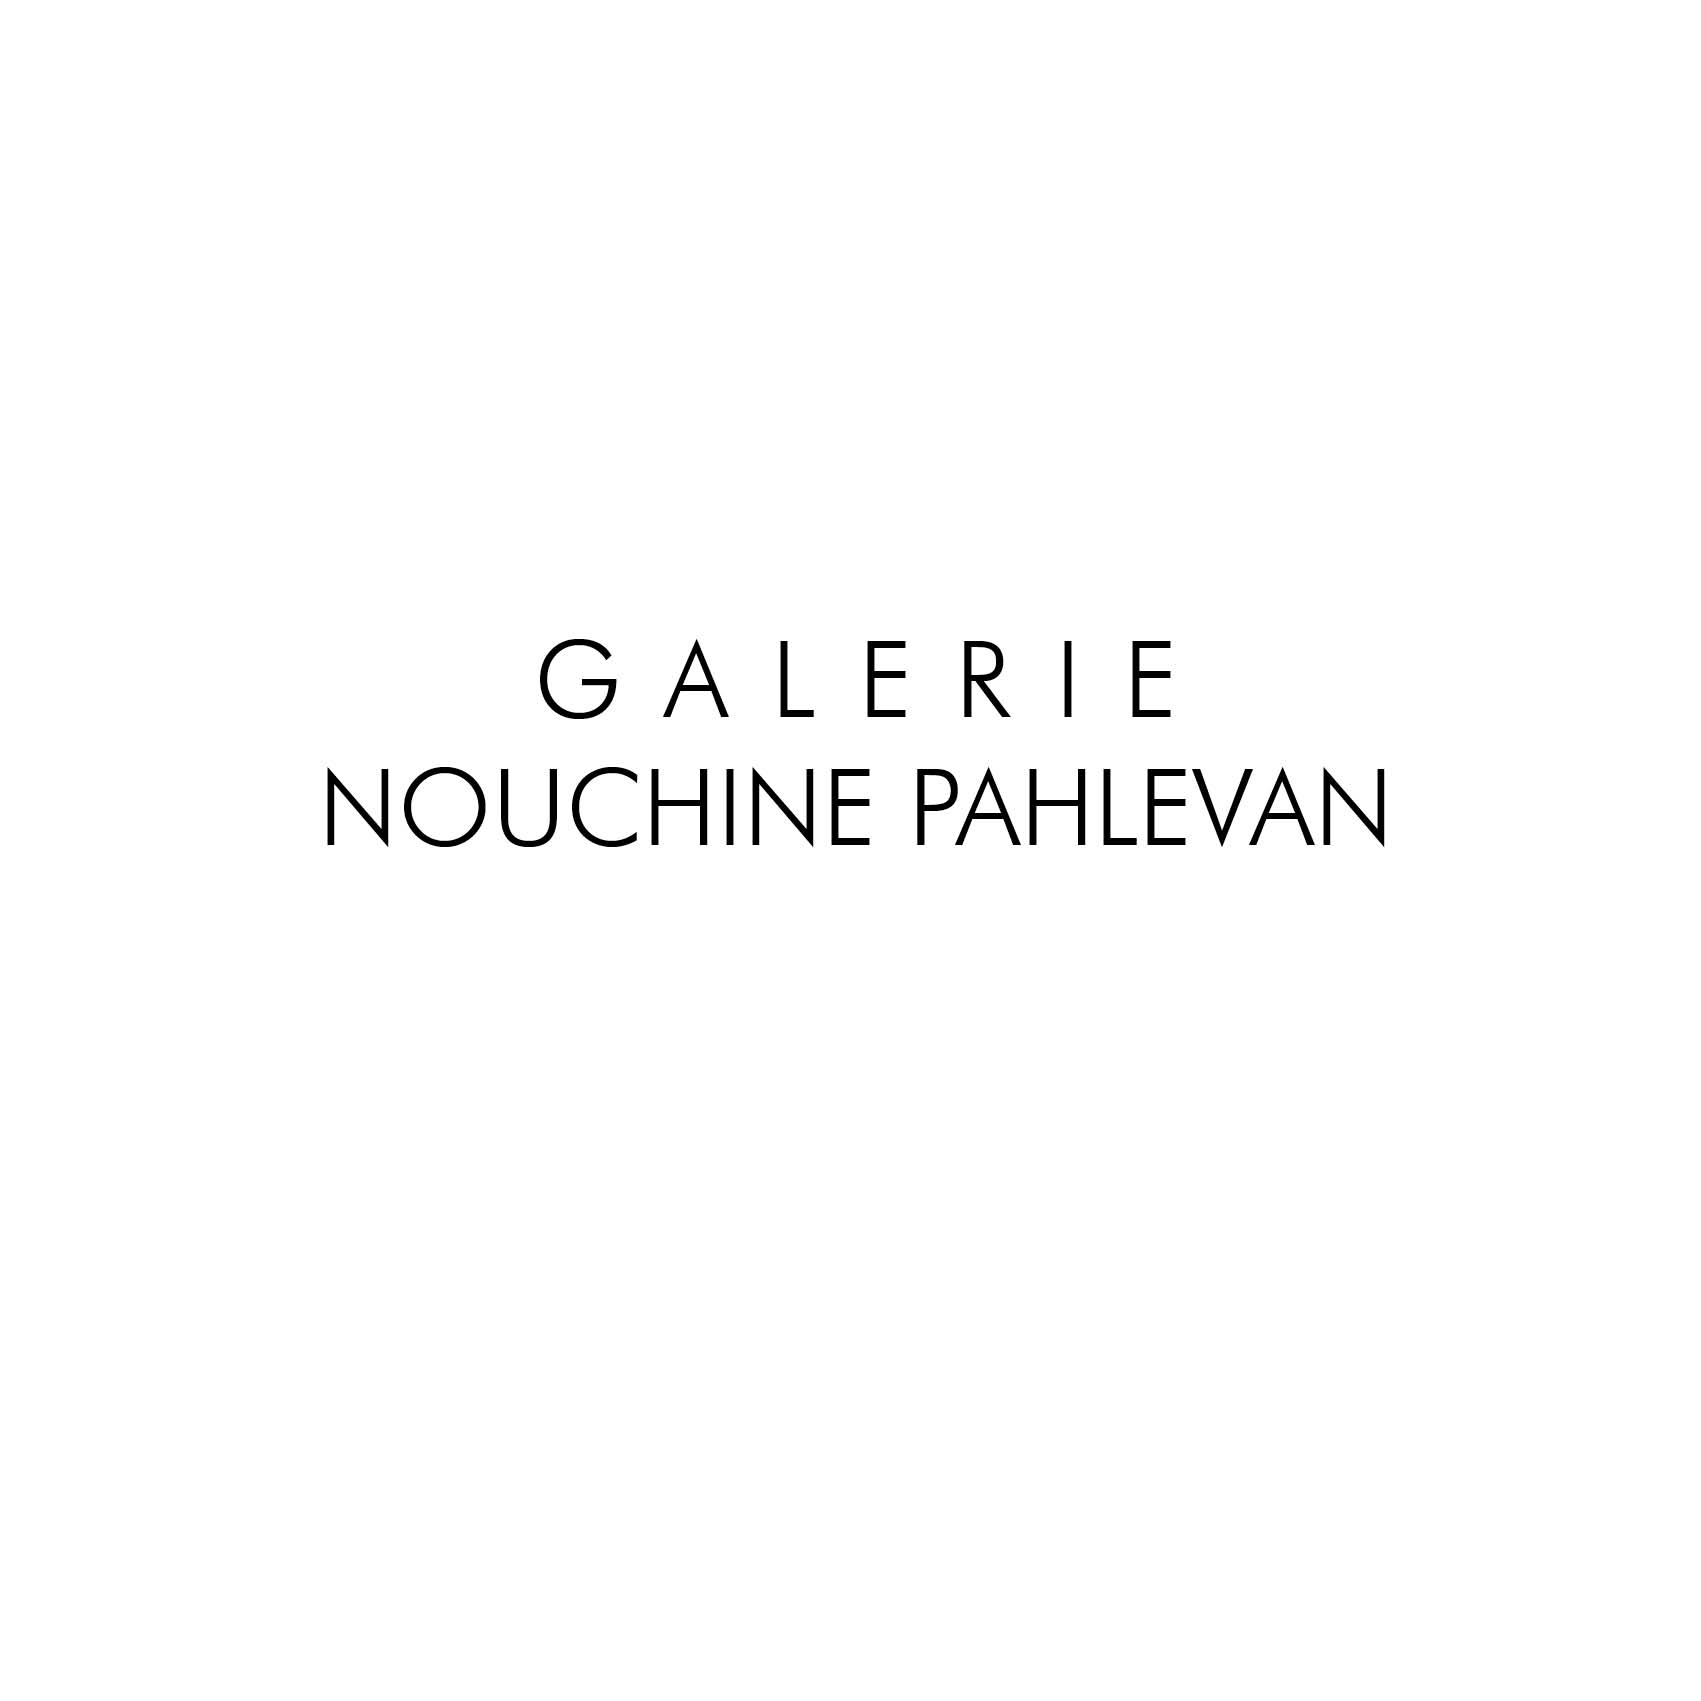 Galerie Nouchine Pahlevan